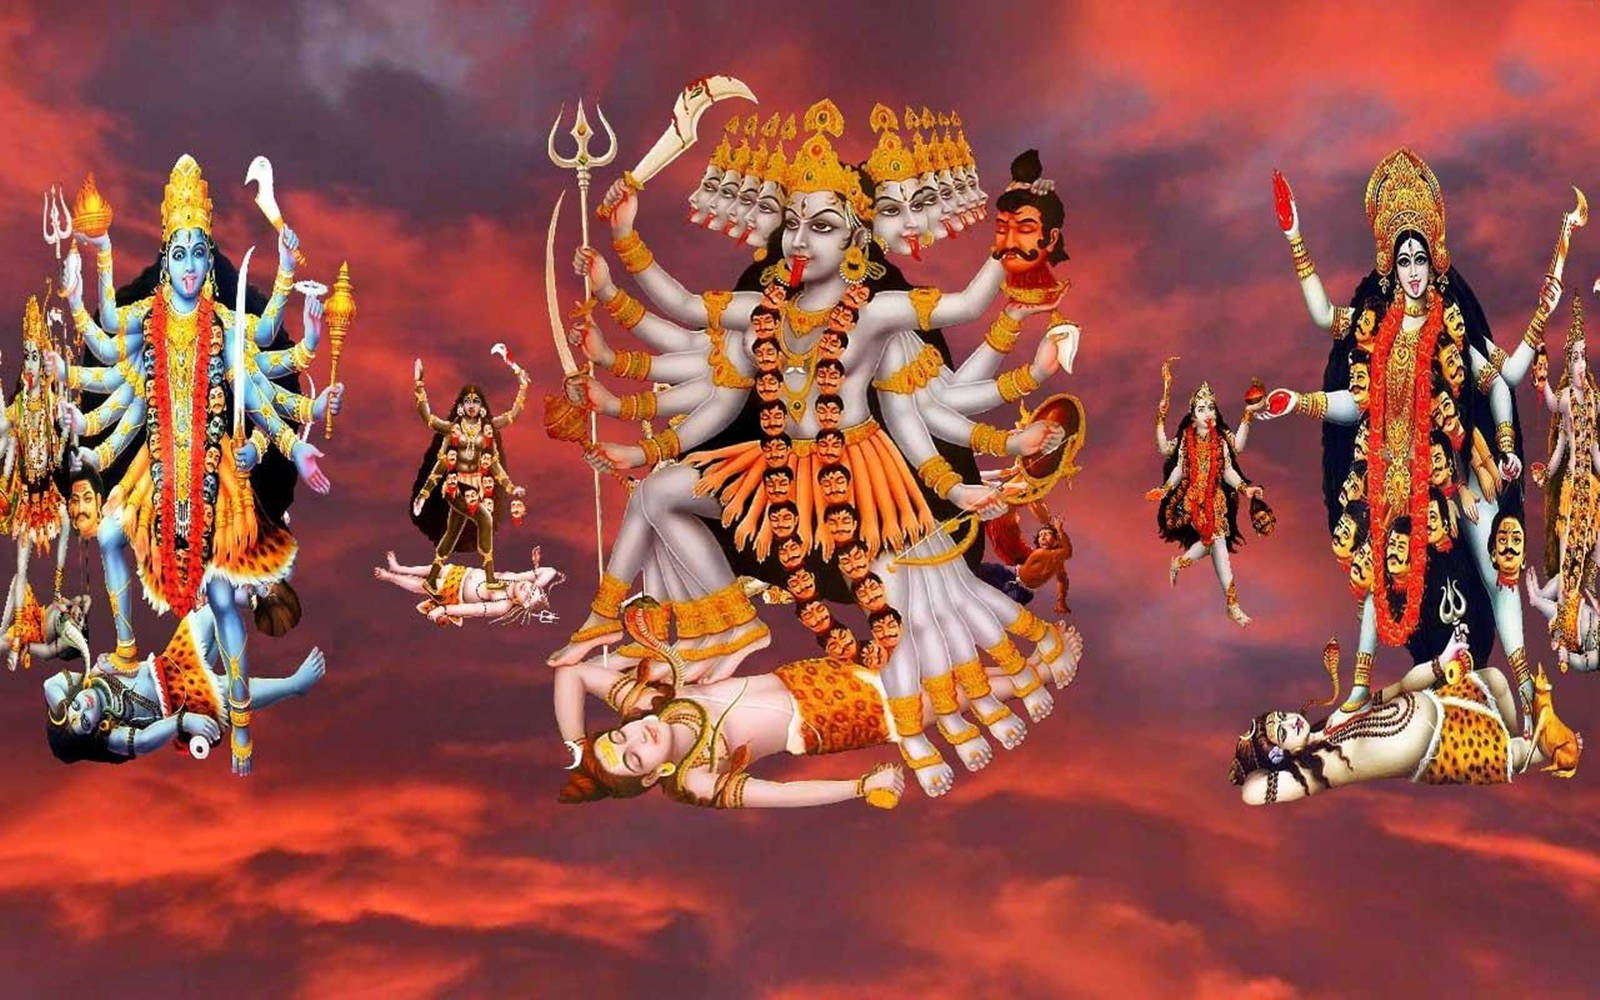 Maa Kali On Shiva Paintings On Red Sky